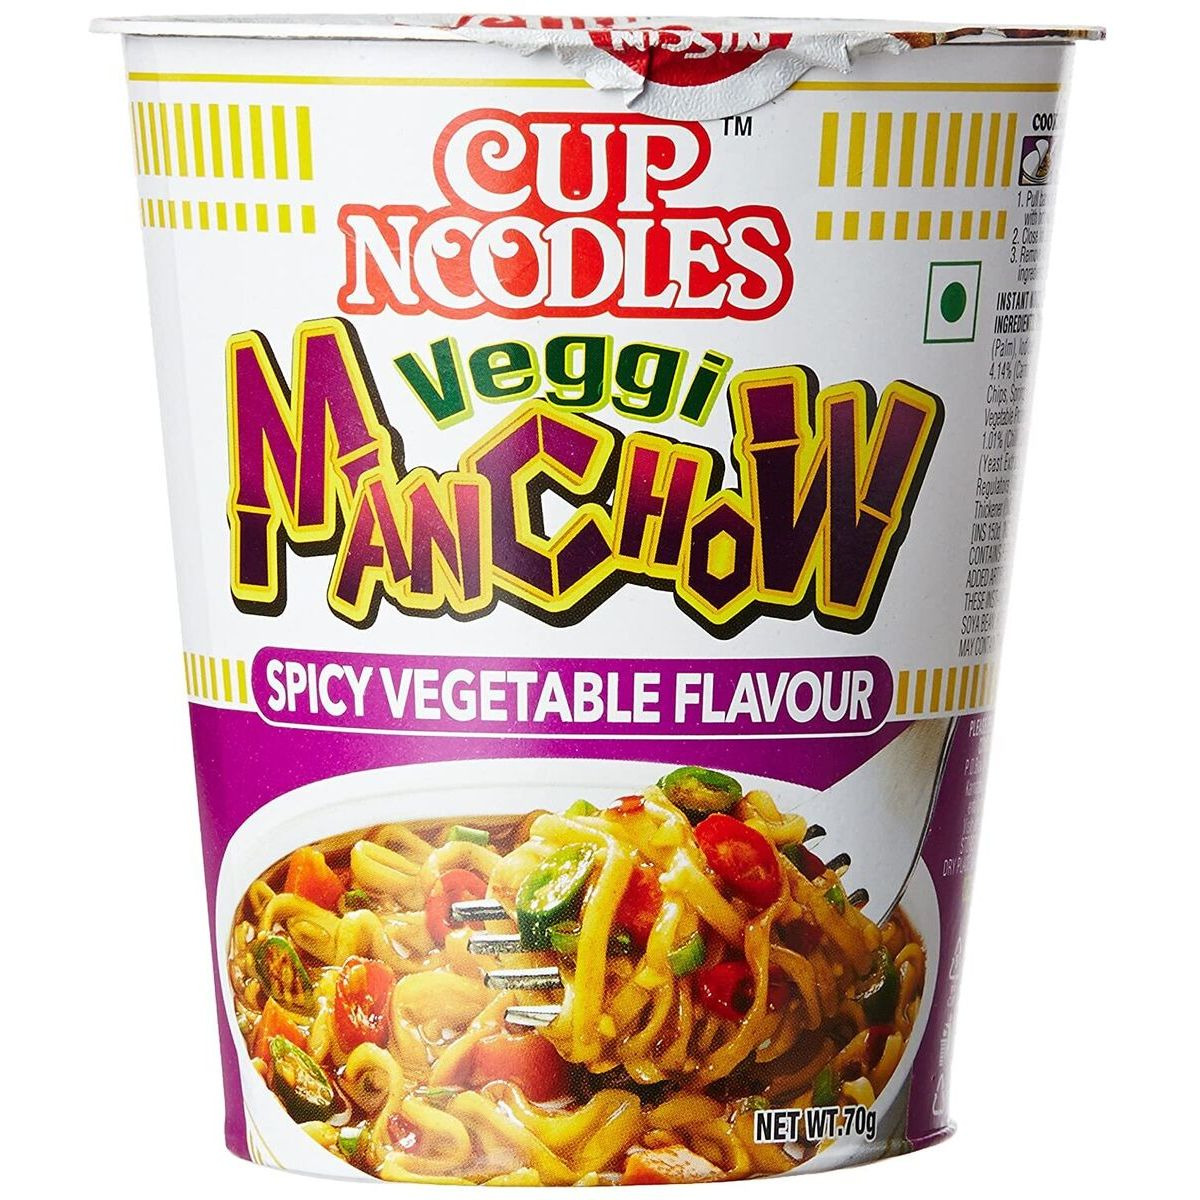 Case of 48 - Nissin Cup Noodles Veggi Manchow - 70 Gm (2.46 Oz)